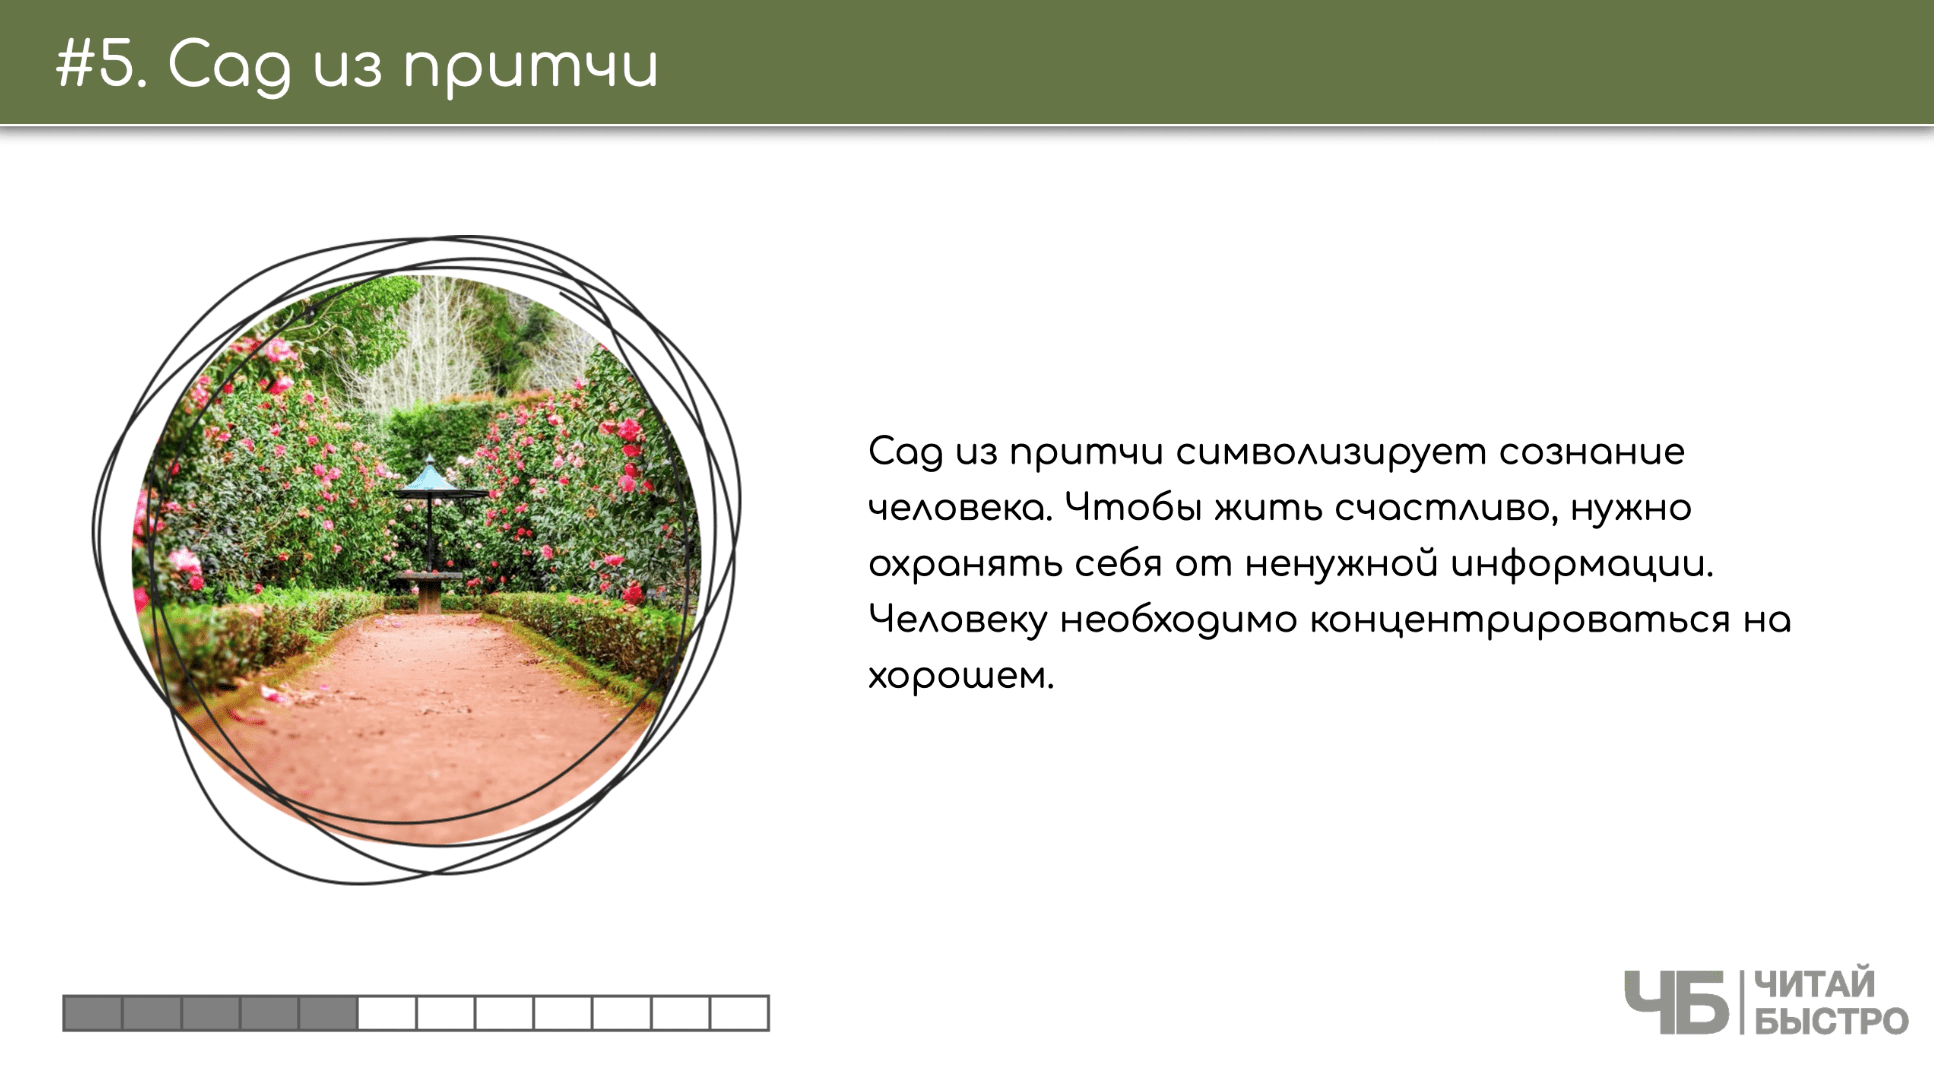 На этом слайде изображен тезис о саде из притчи и иллюстрация сада.